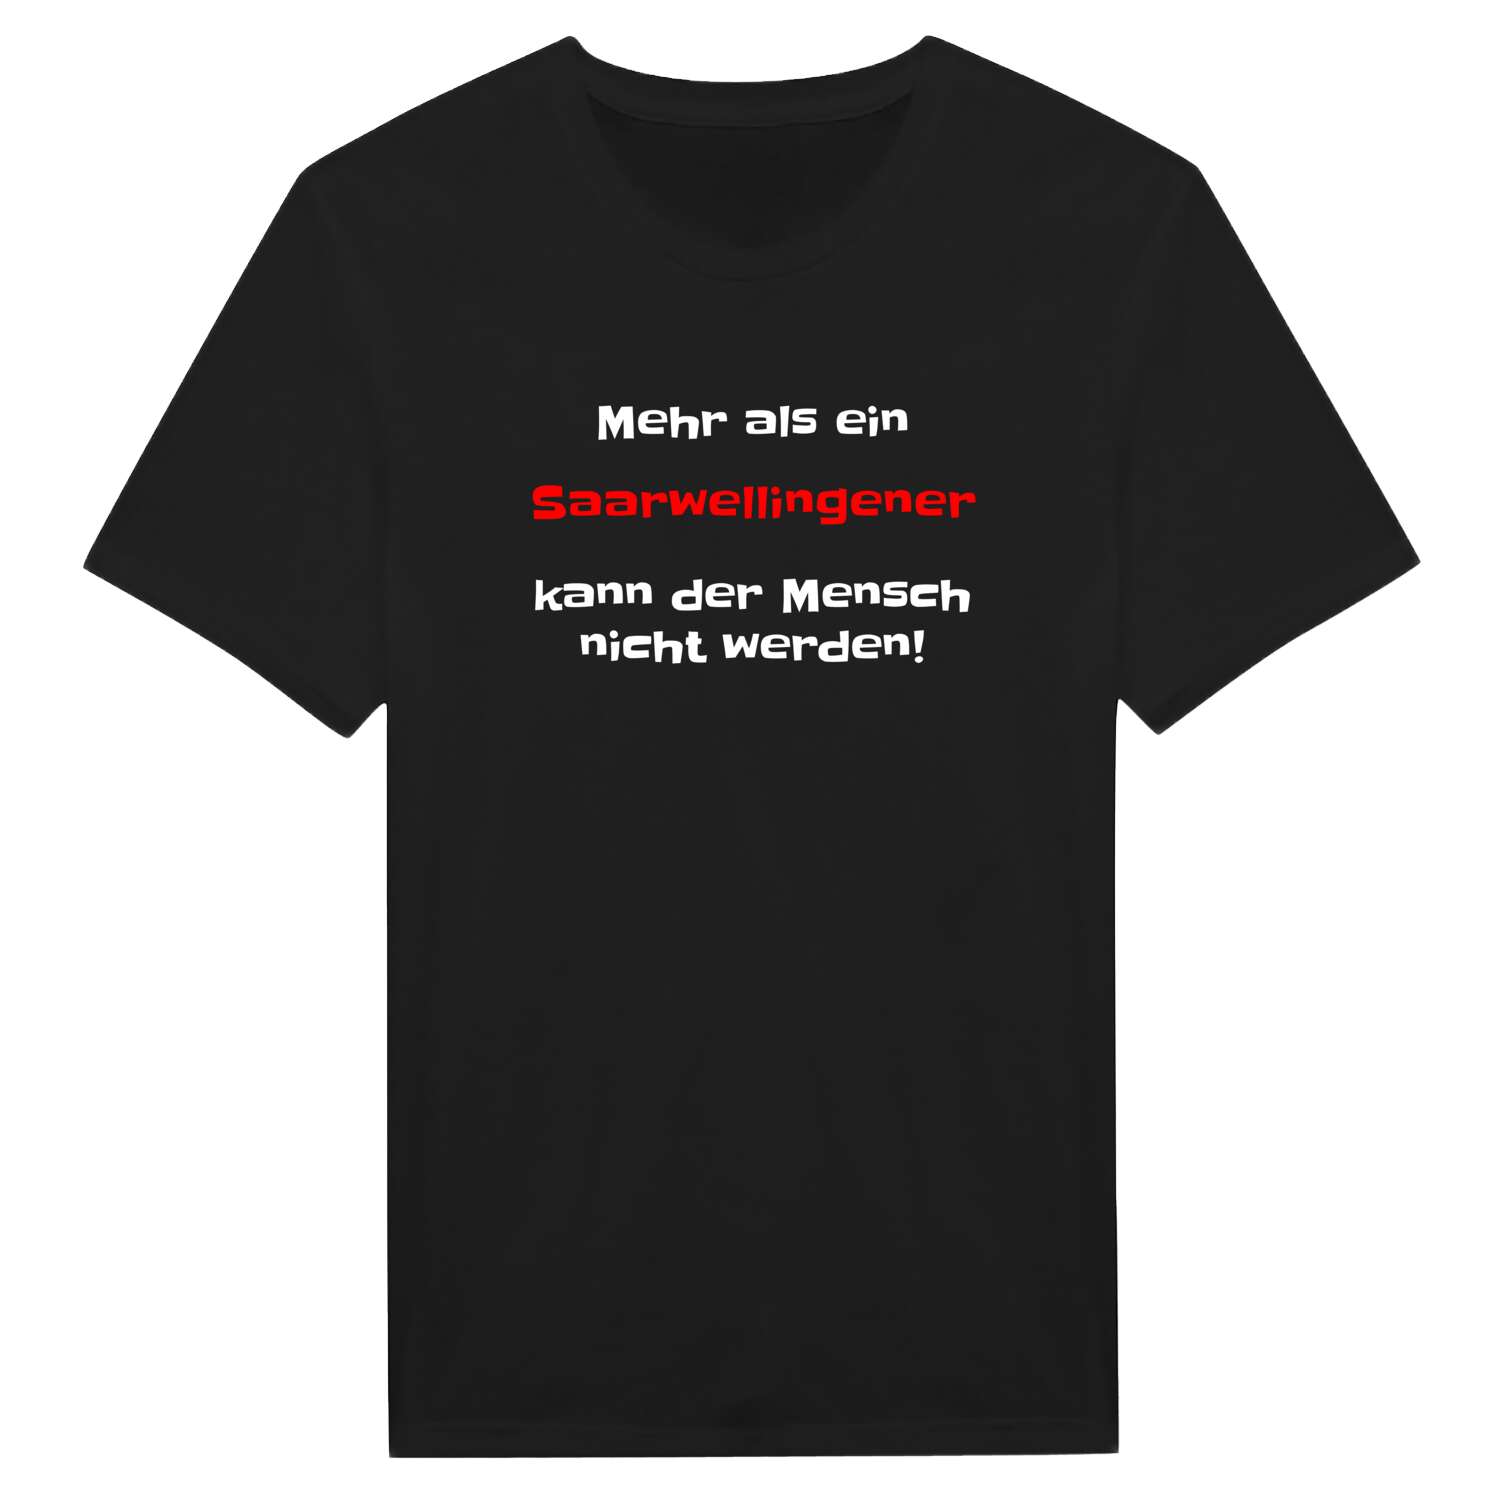 Saarwellingen T-Shirt »Mehr als ein«